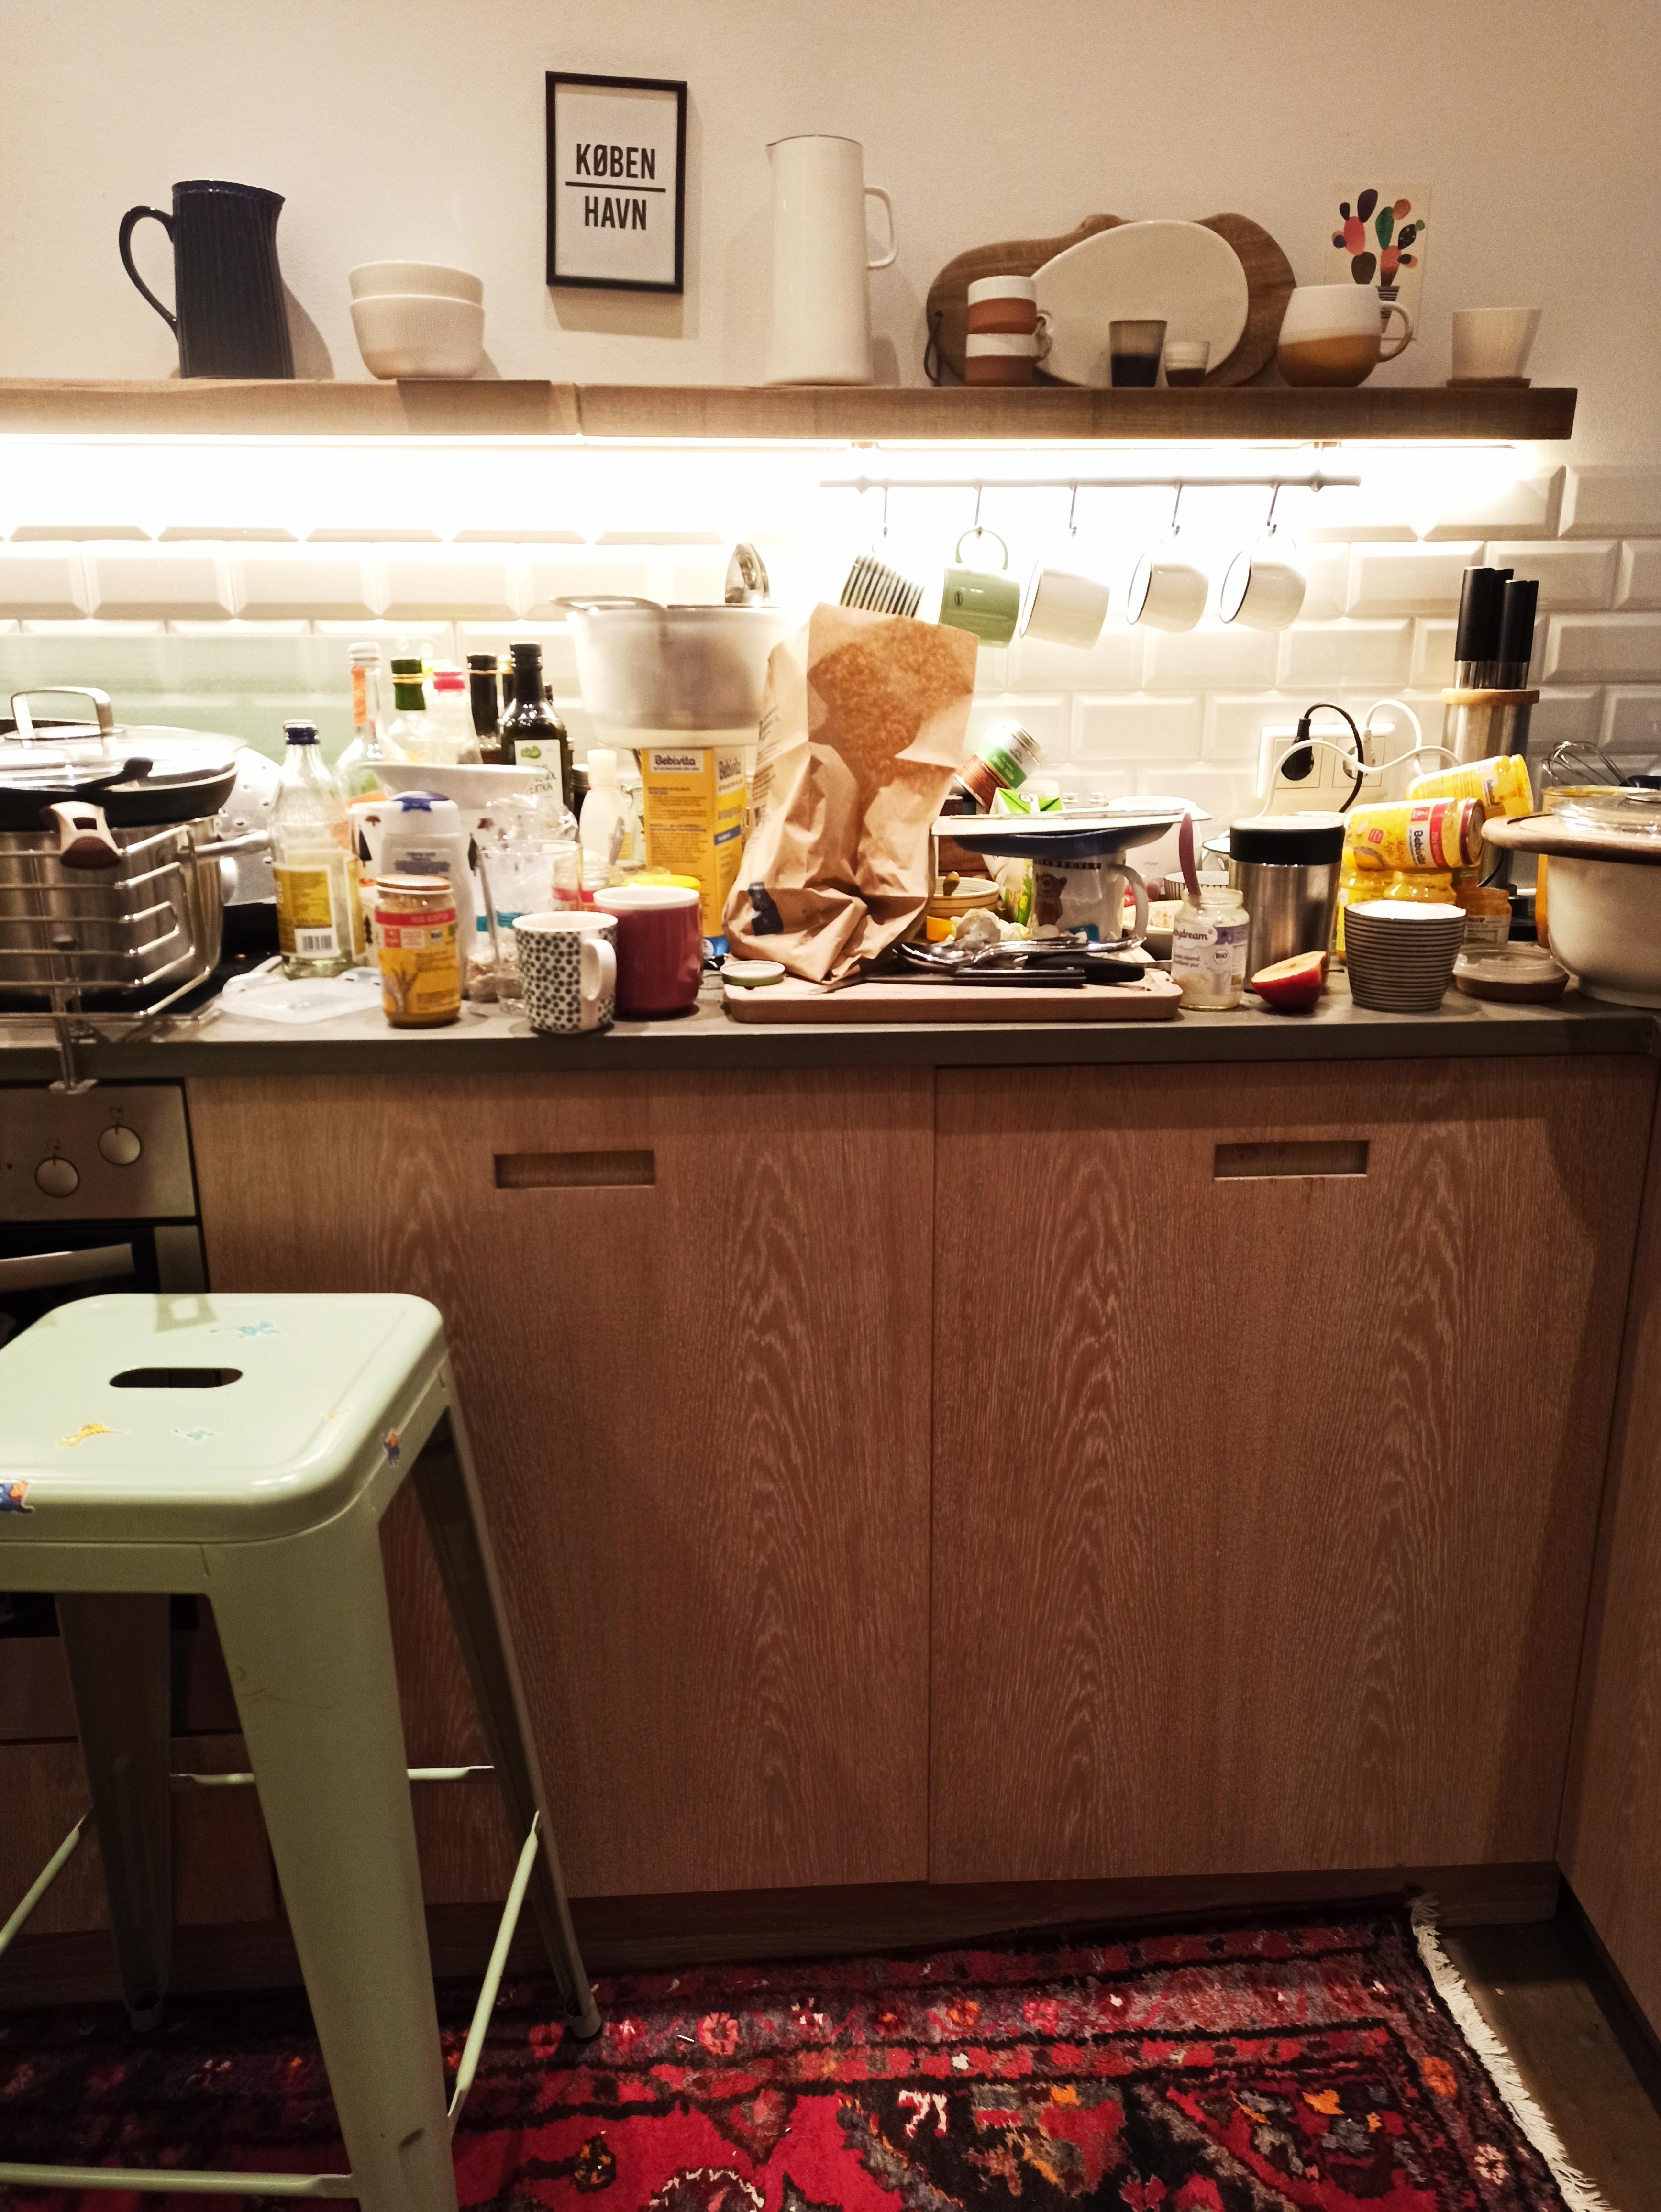 Keinen Platz mehr für den Toaster gefunden. Müssen wohl umziehen 🙊 #küche #chaos #sovielekinder